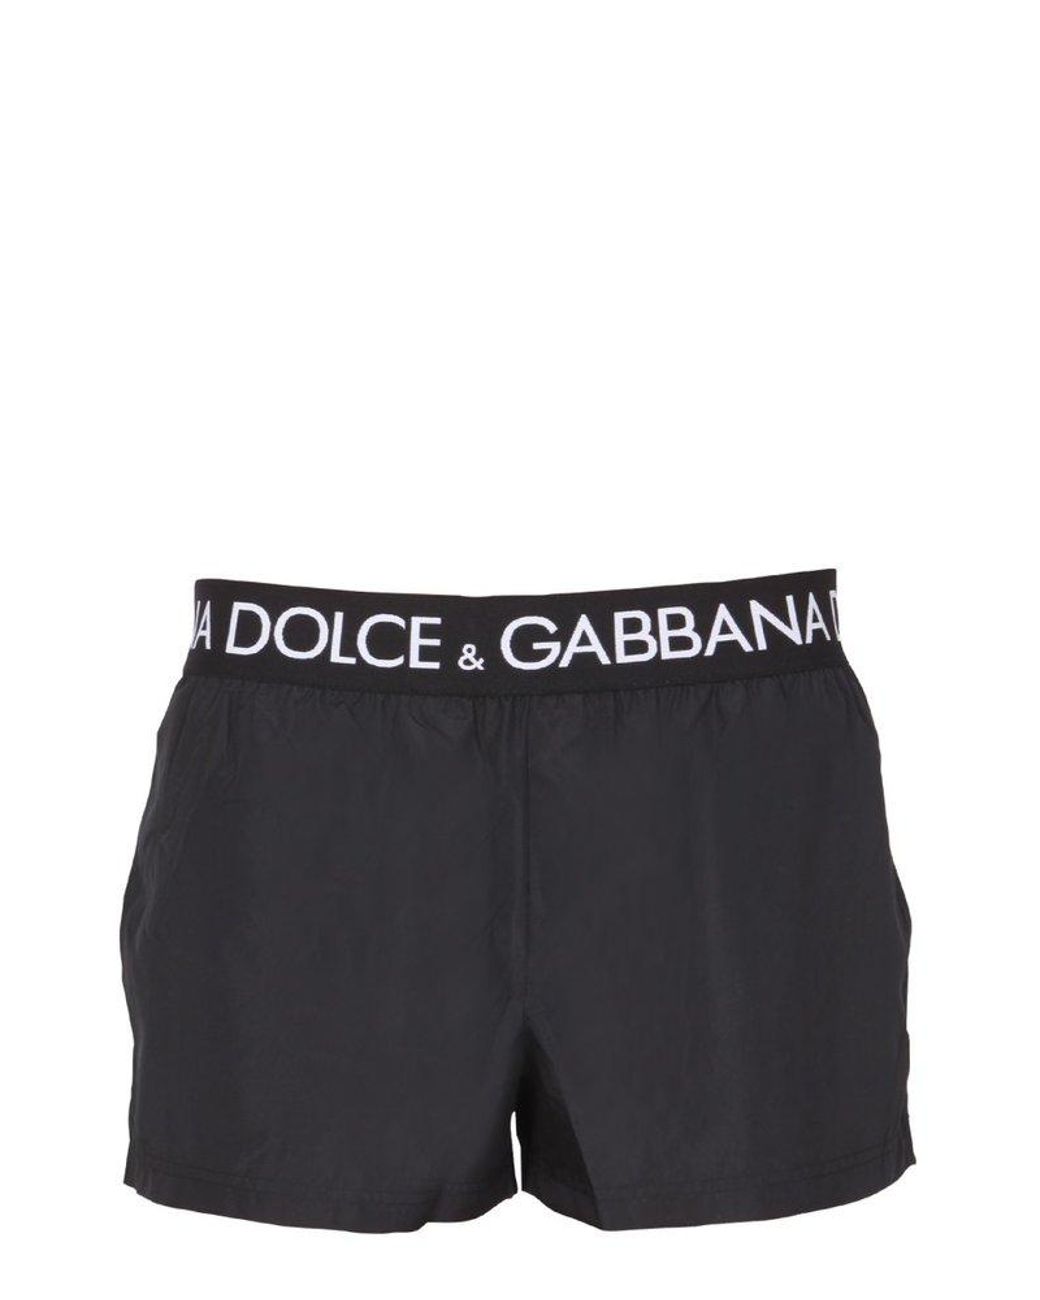 Dolce & Gabbana Synthetic Short Boxer in Black White Black for Men Mens Clothing Beachwear Swim trunks and swim shorts 